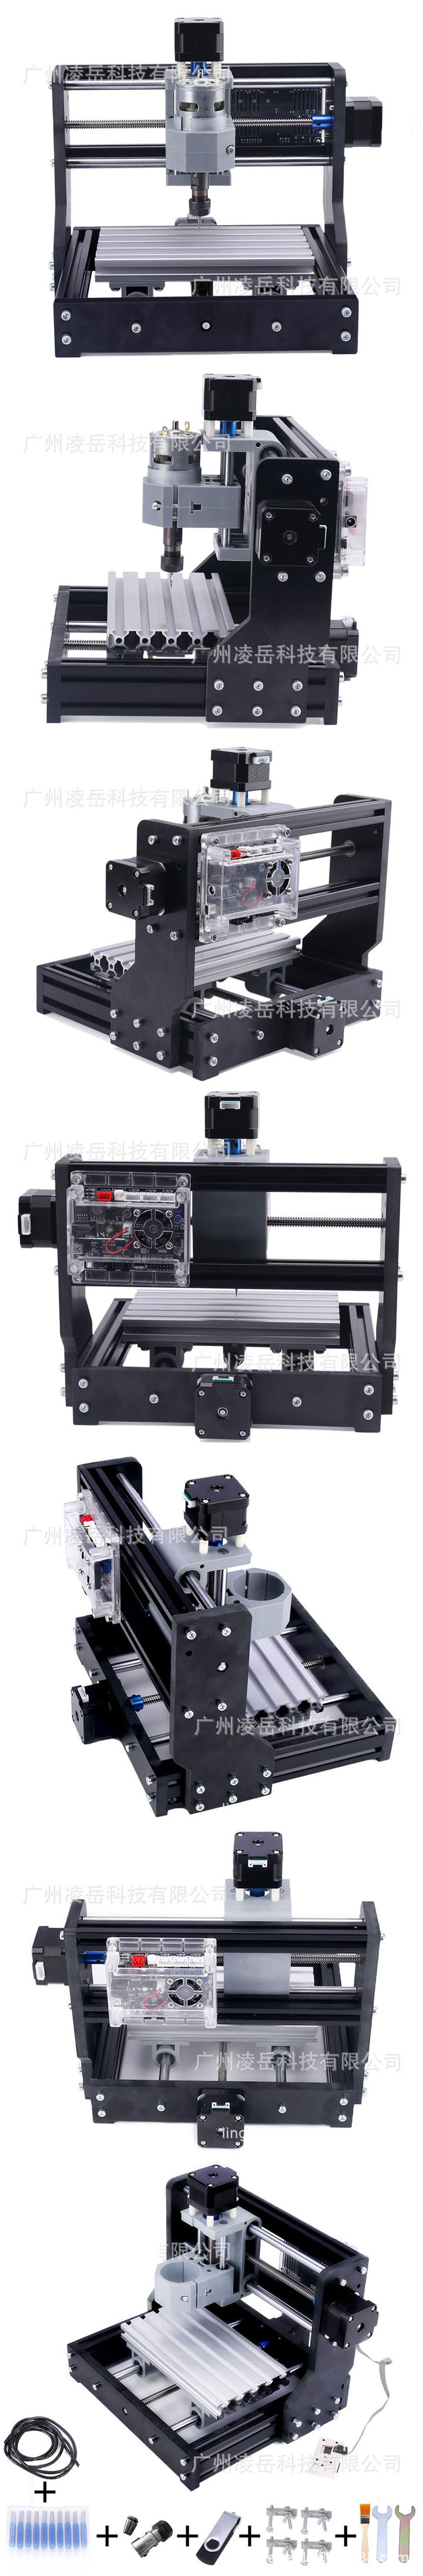 Machine de gravure laser bricolage